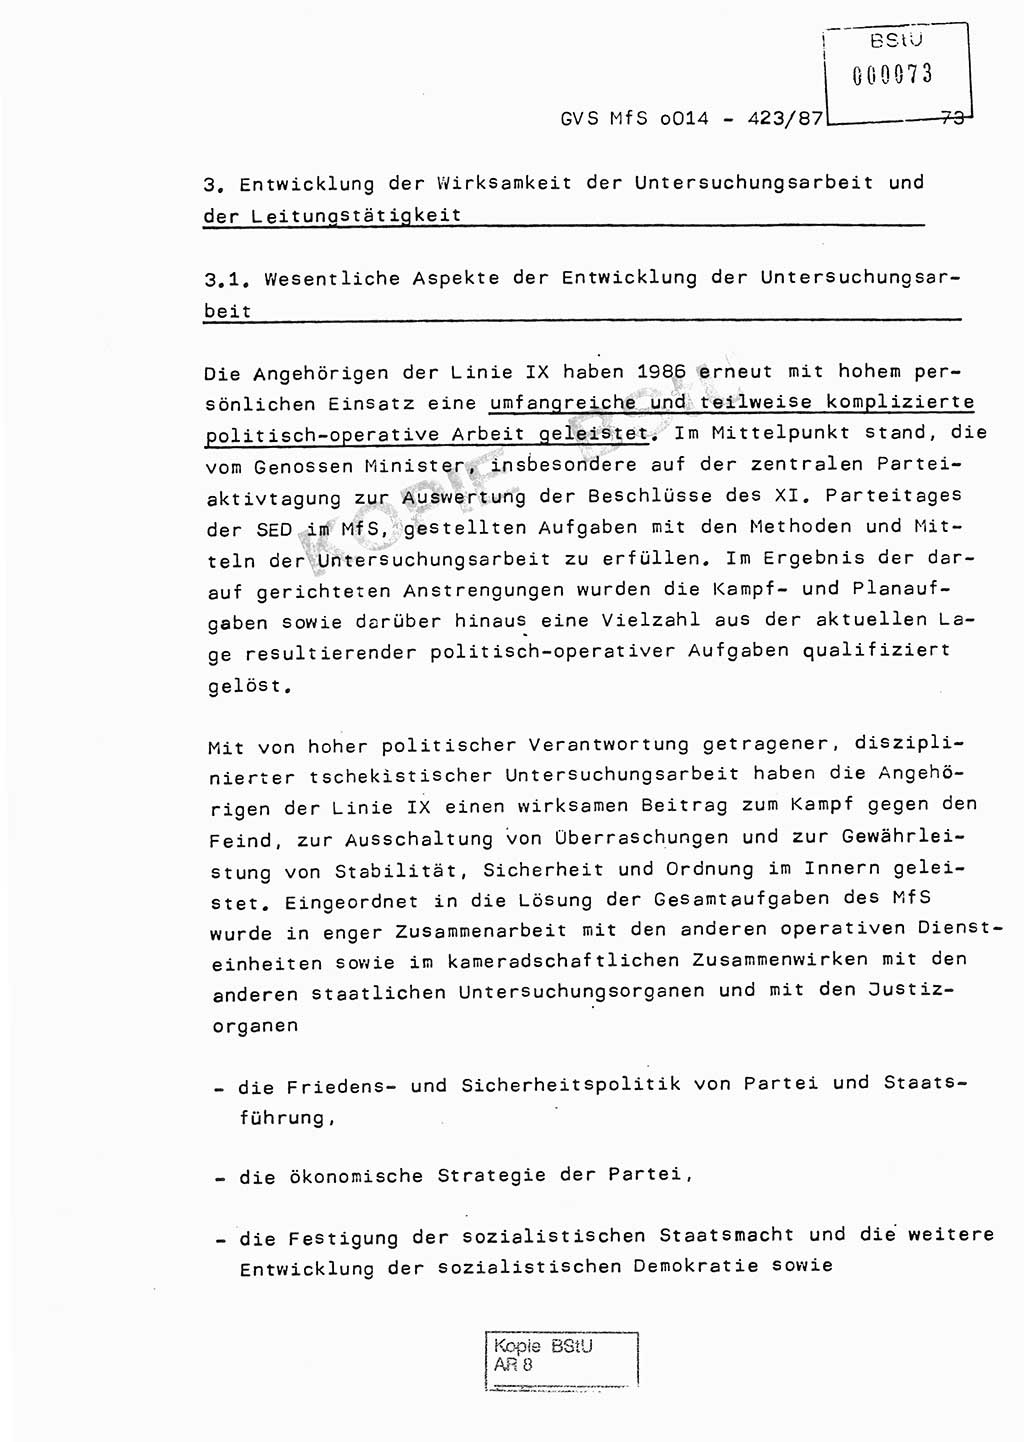 Jahresbericht der Hauptabteilung (HA) Ⅸ 1986, Einschätzung der Wirksamkeit der Untersuchungsarbeit im Jahre 1986, Ministerium für Staatssicherheit (MfS) der Deutschen Demokratischen Republik (DDR), Hauptabteilung Ⅸ, Geheime Verschlußsache (GVS) o014-423/87, Berlin 1987, Seite 73 (Einsch. MfS DDR HA Ⅸ GVS o014-423/87 1986, S. 73)